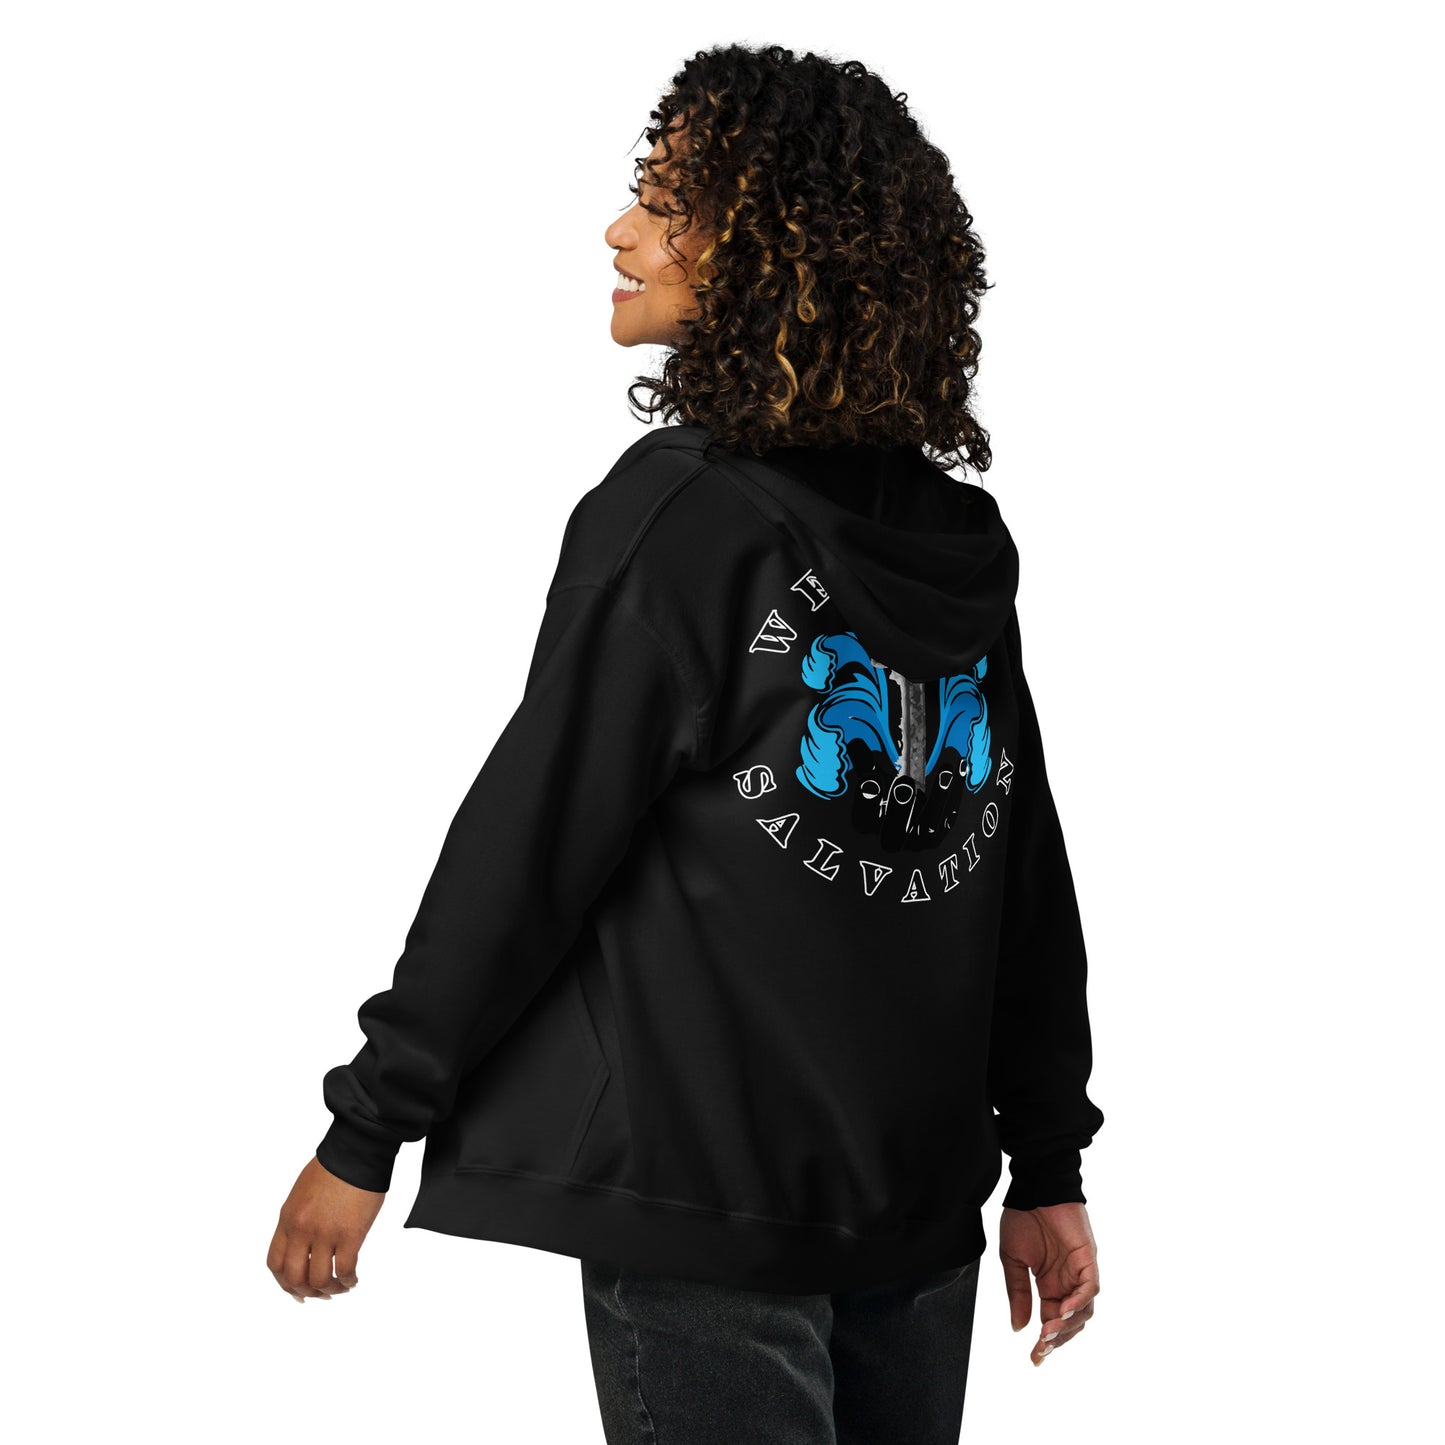 Wells w/ QR code - Unisex heavy blend zip hoodie